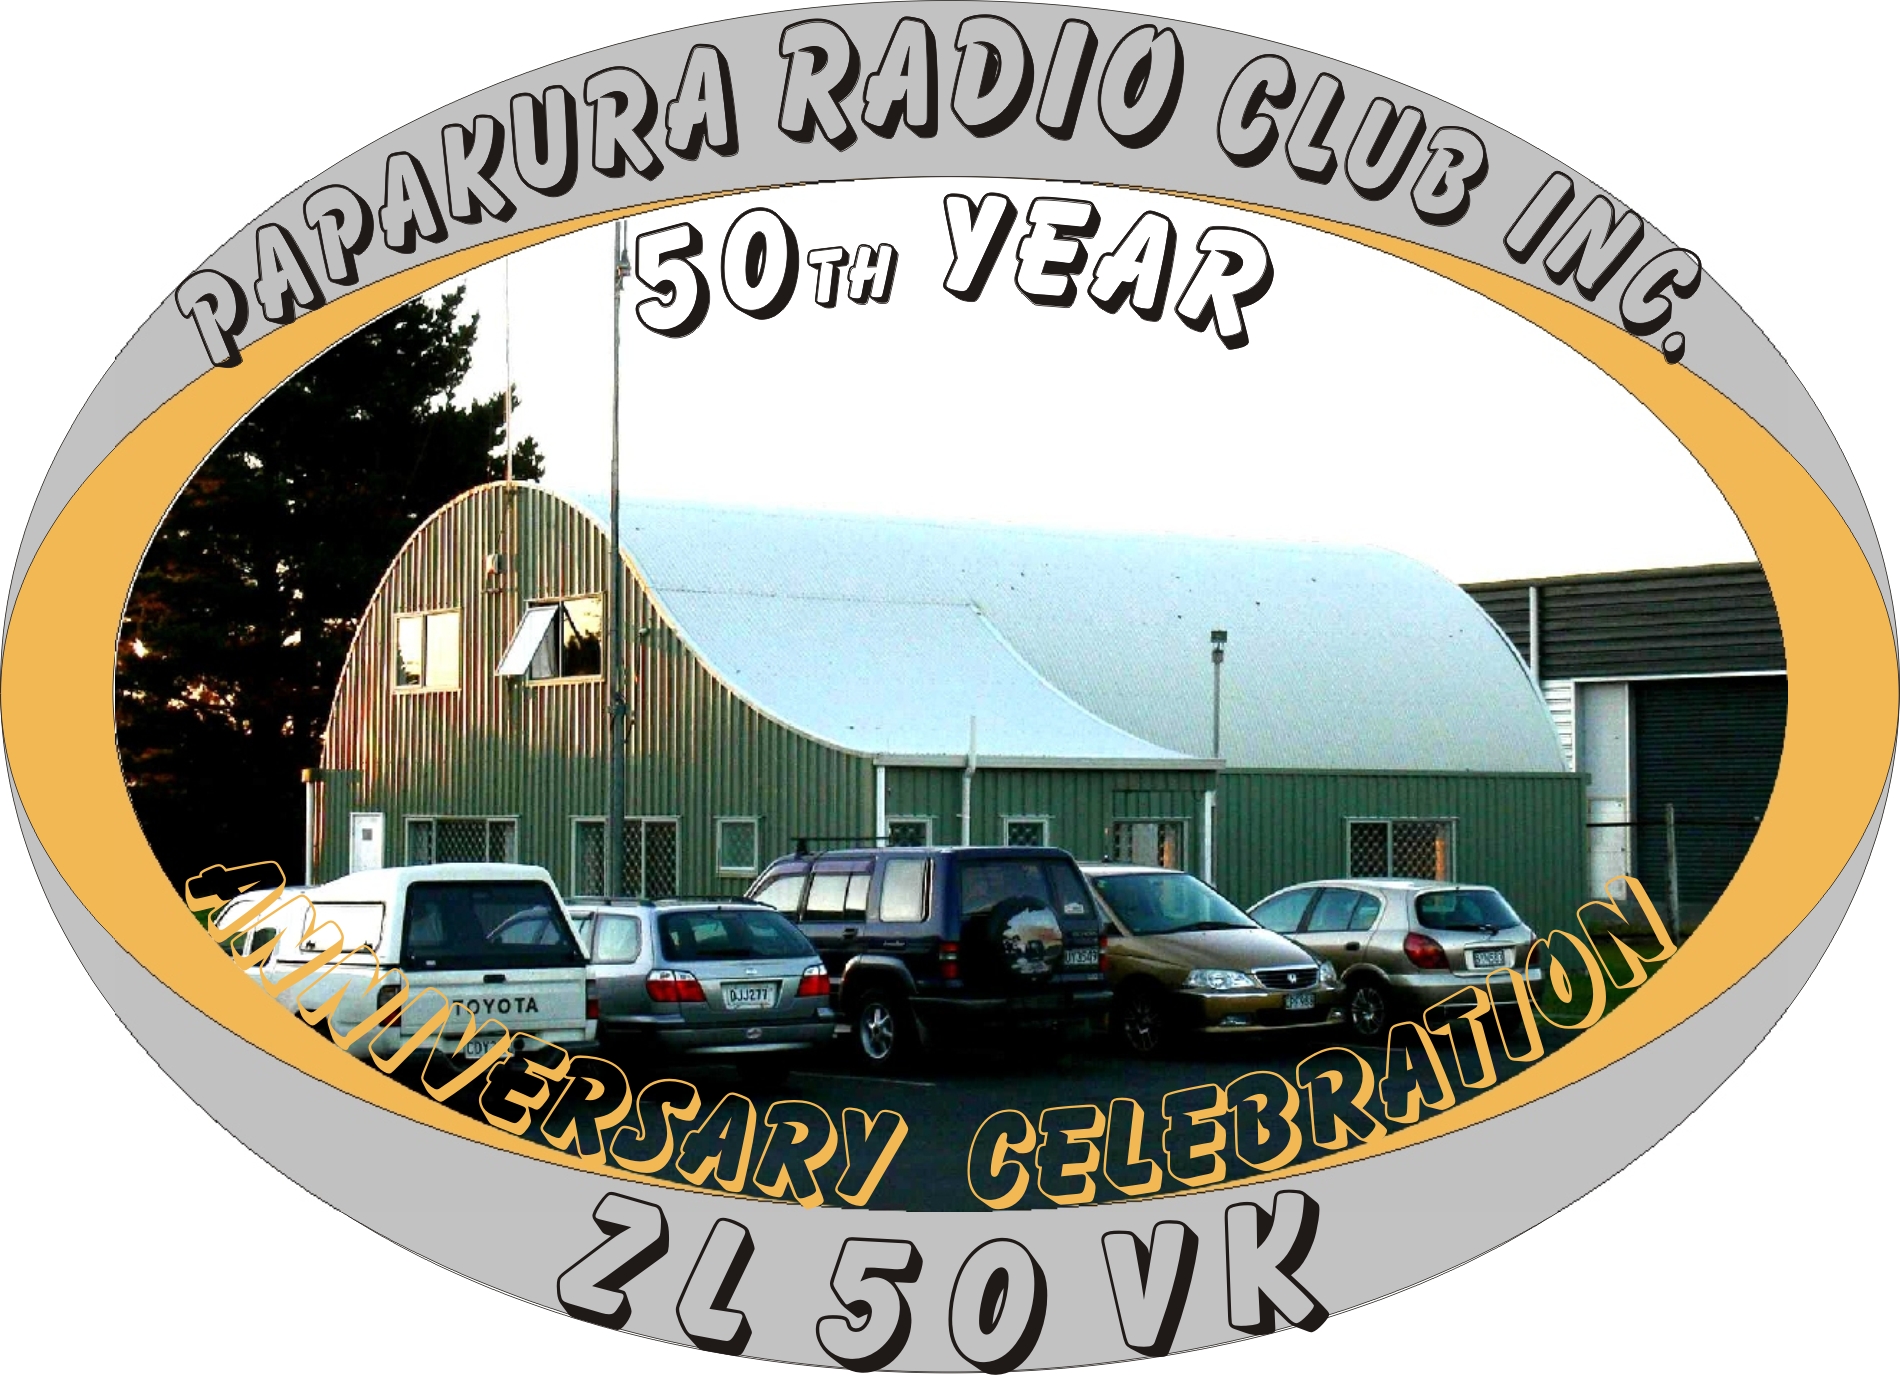 Our Papakura Radio Club inc. building